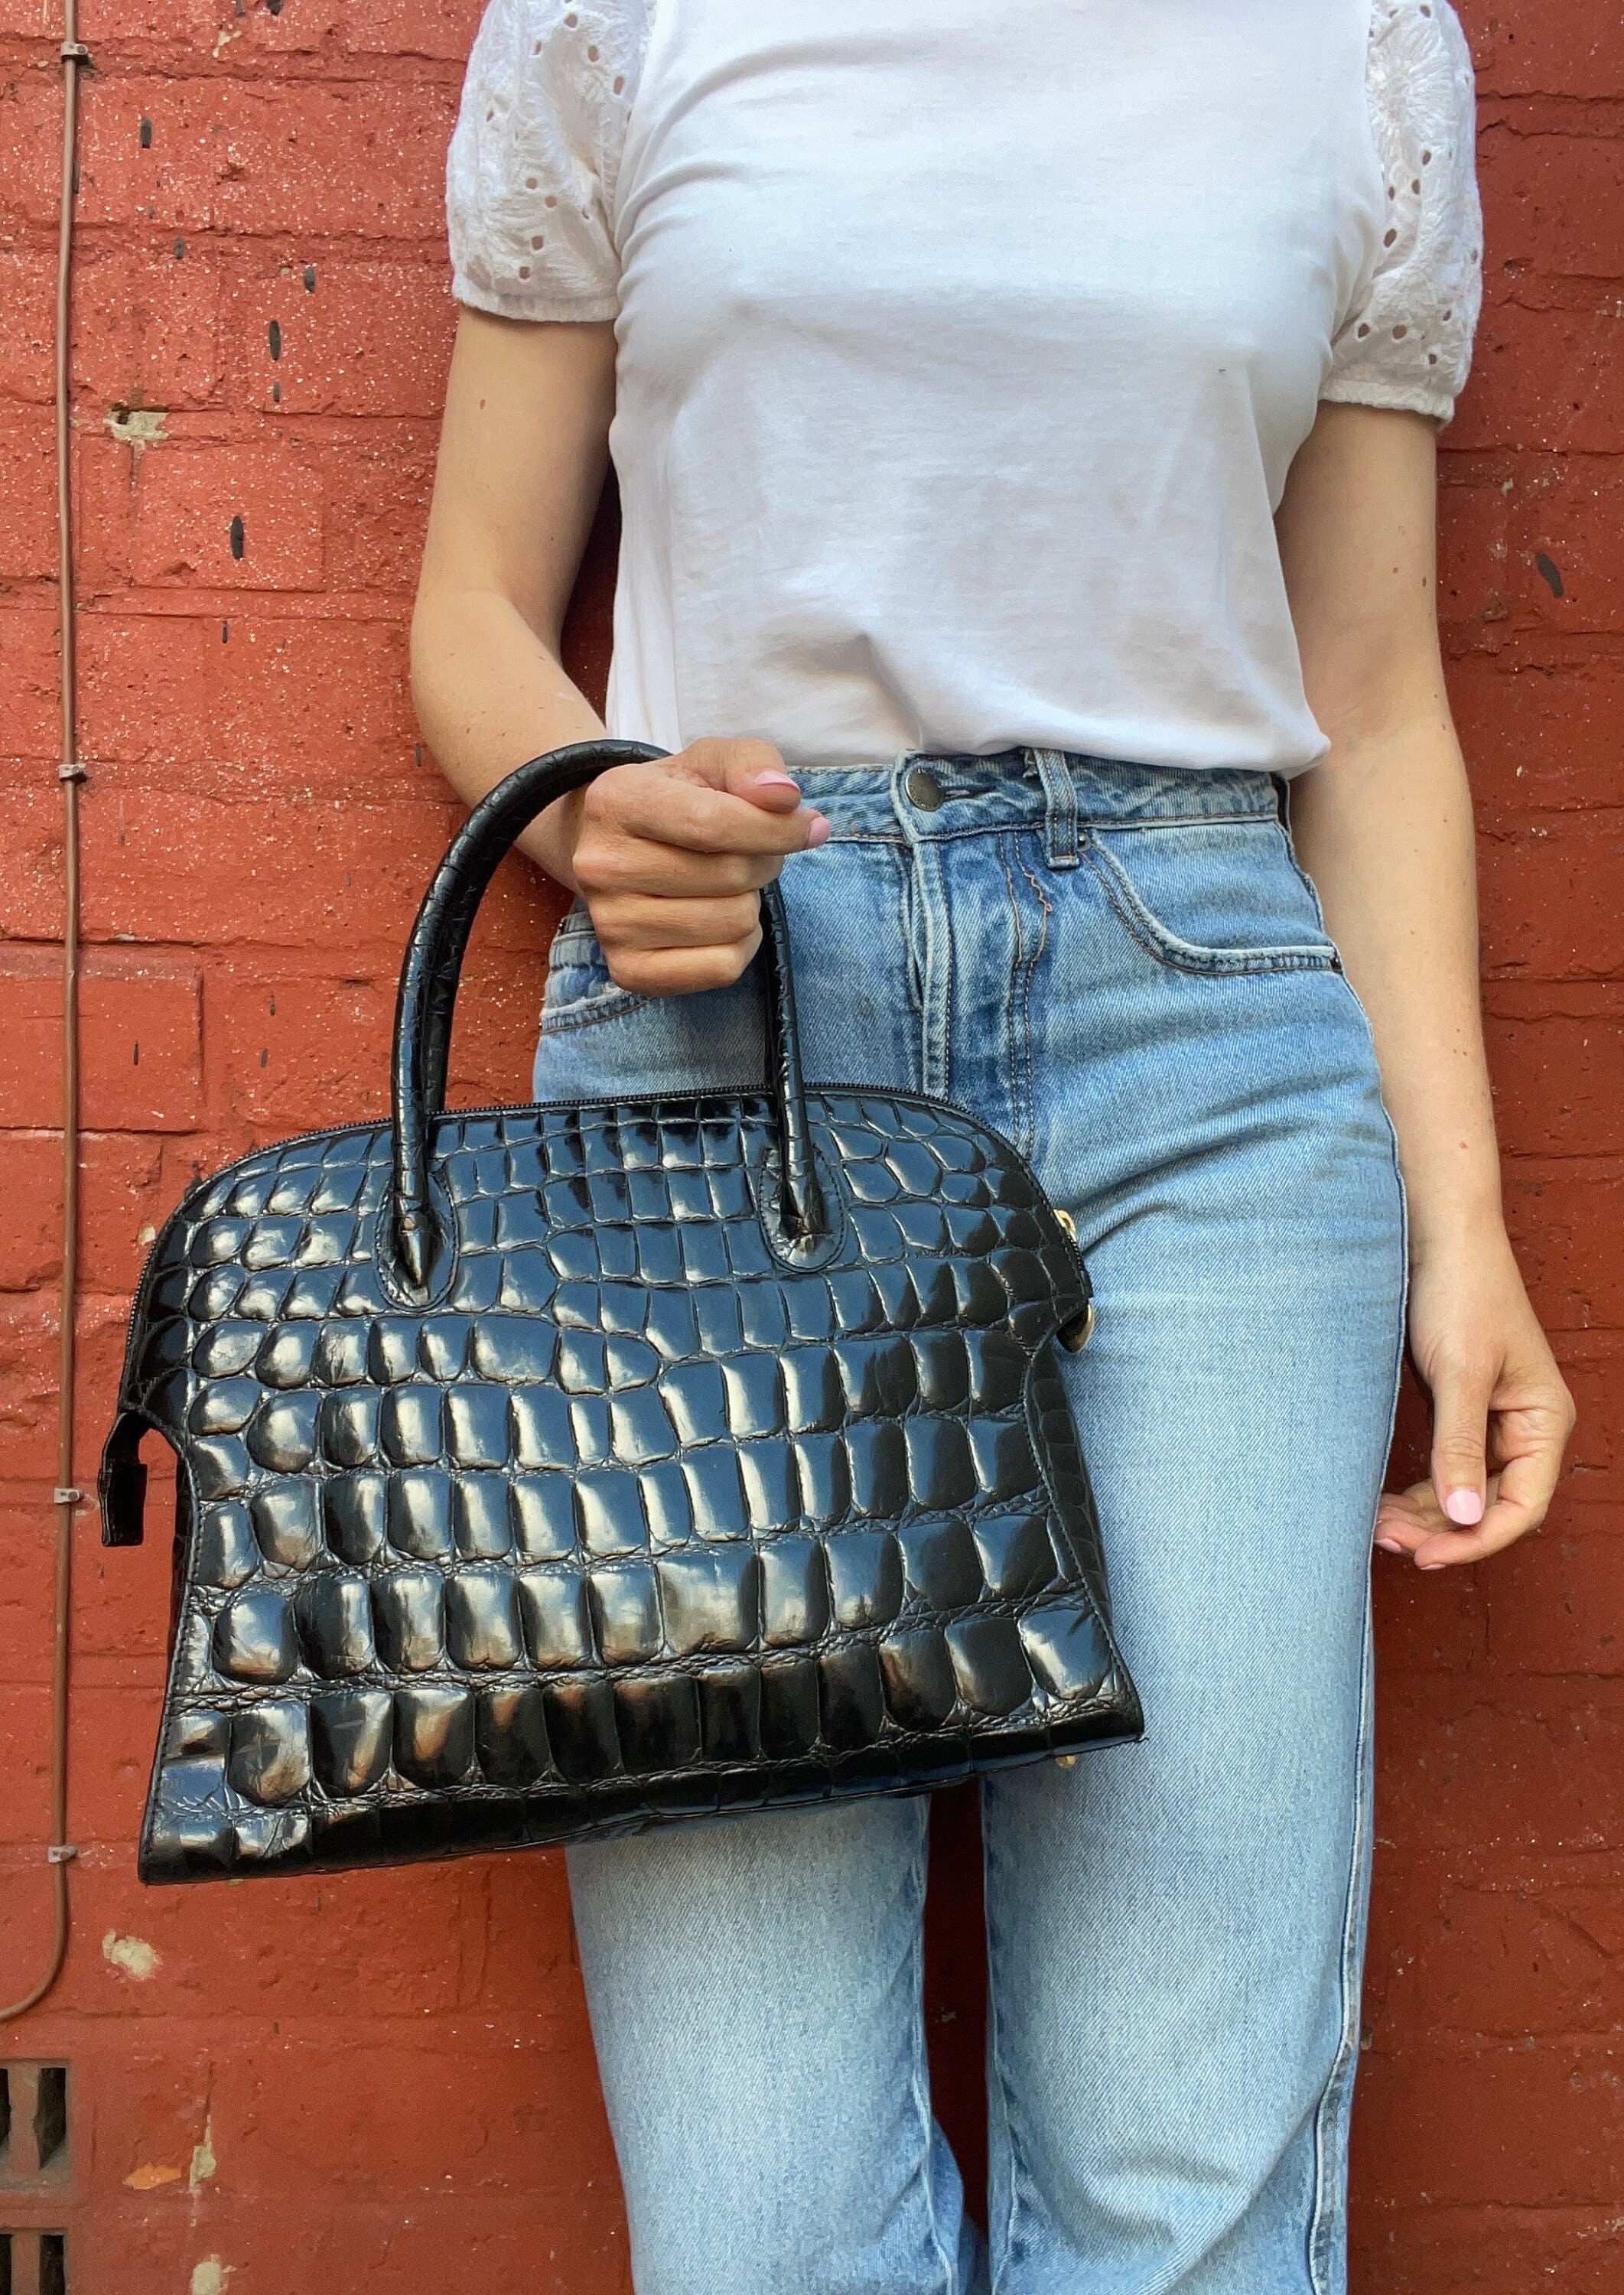 Burgundy Croc Embossed Genuine Leather Handbags Satchel Bags for